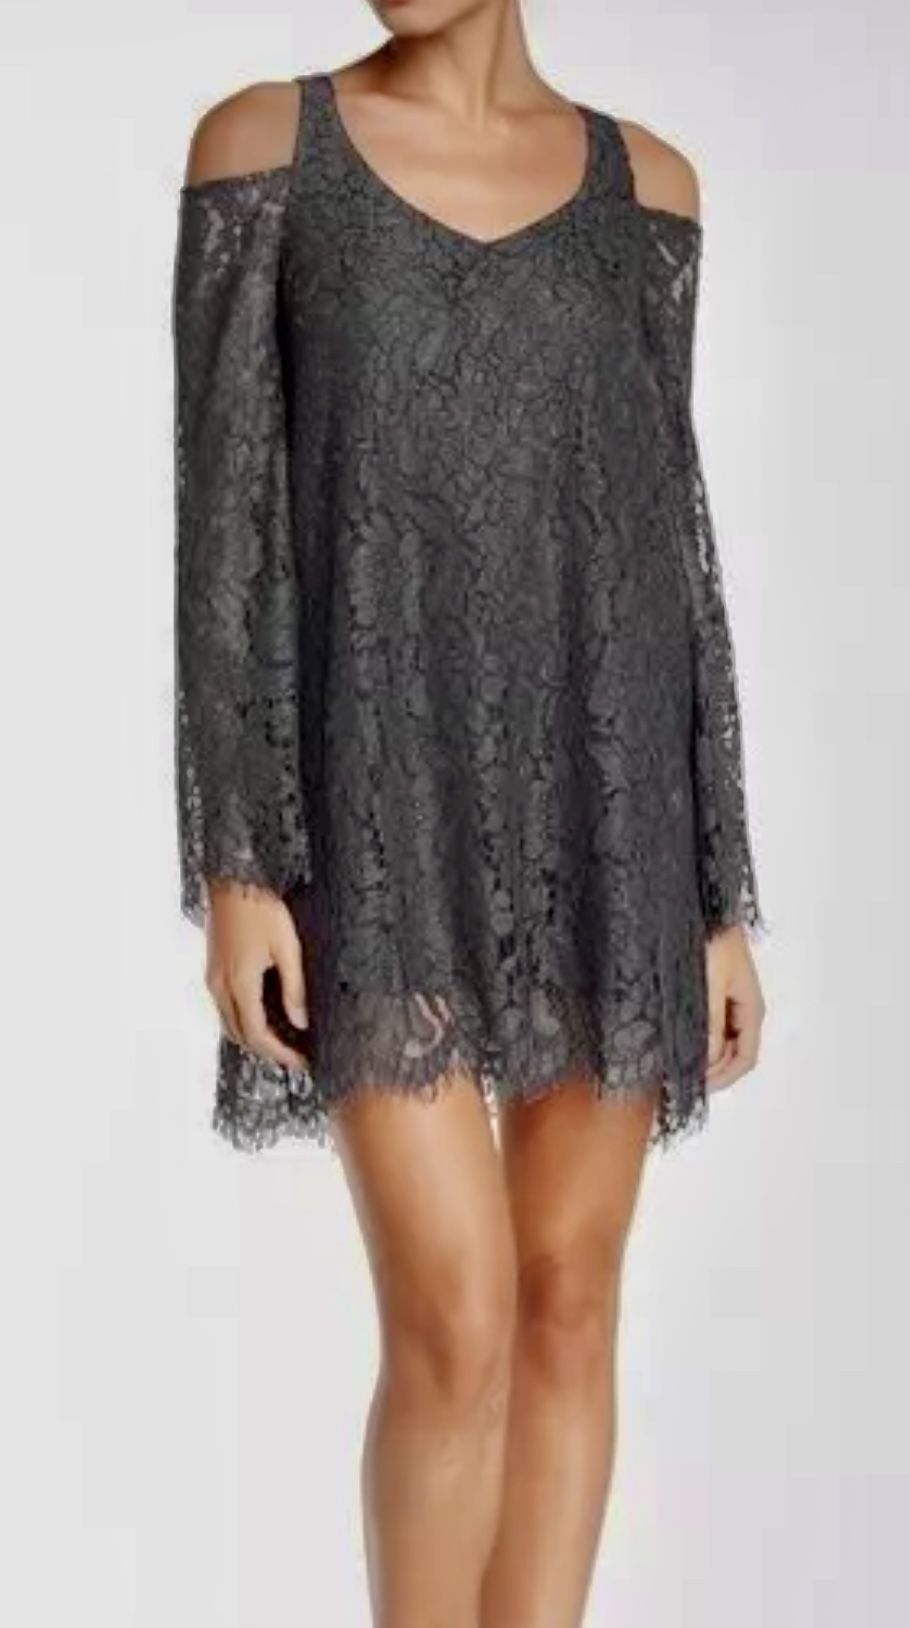 NWT Lace Mini Dress